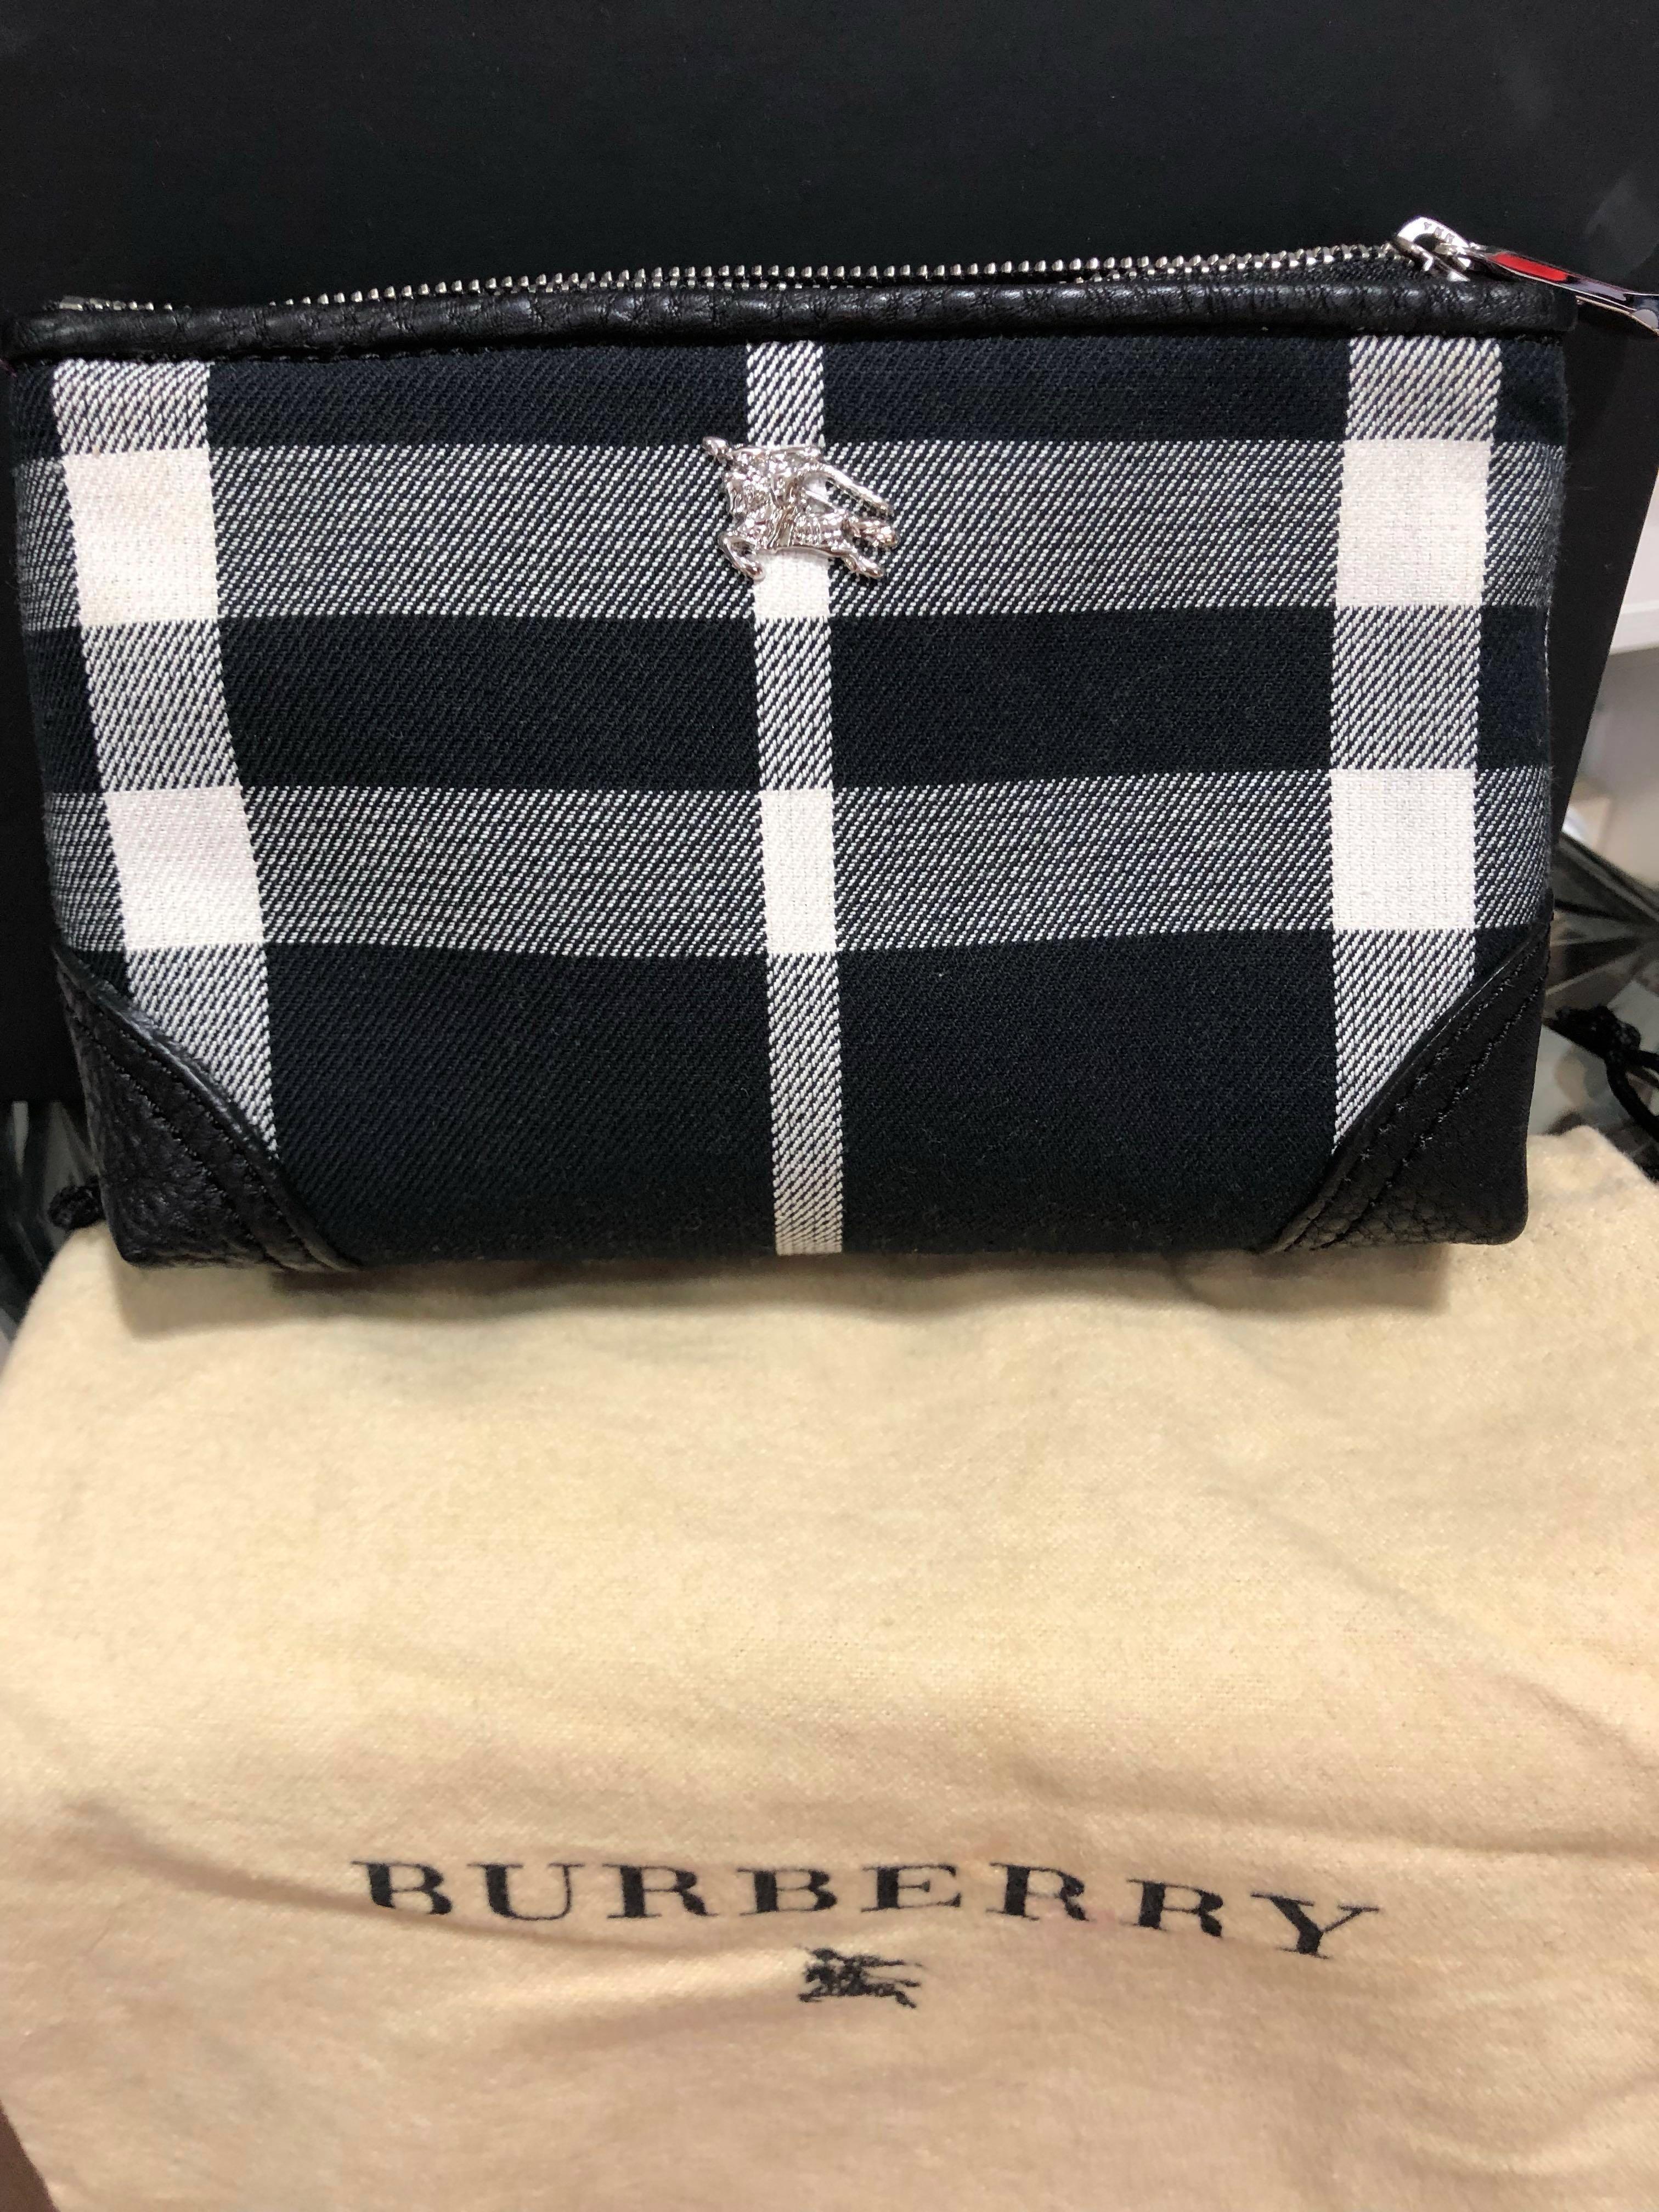 burberry makeup bag